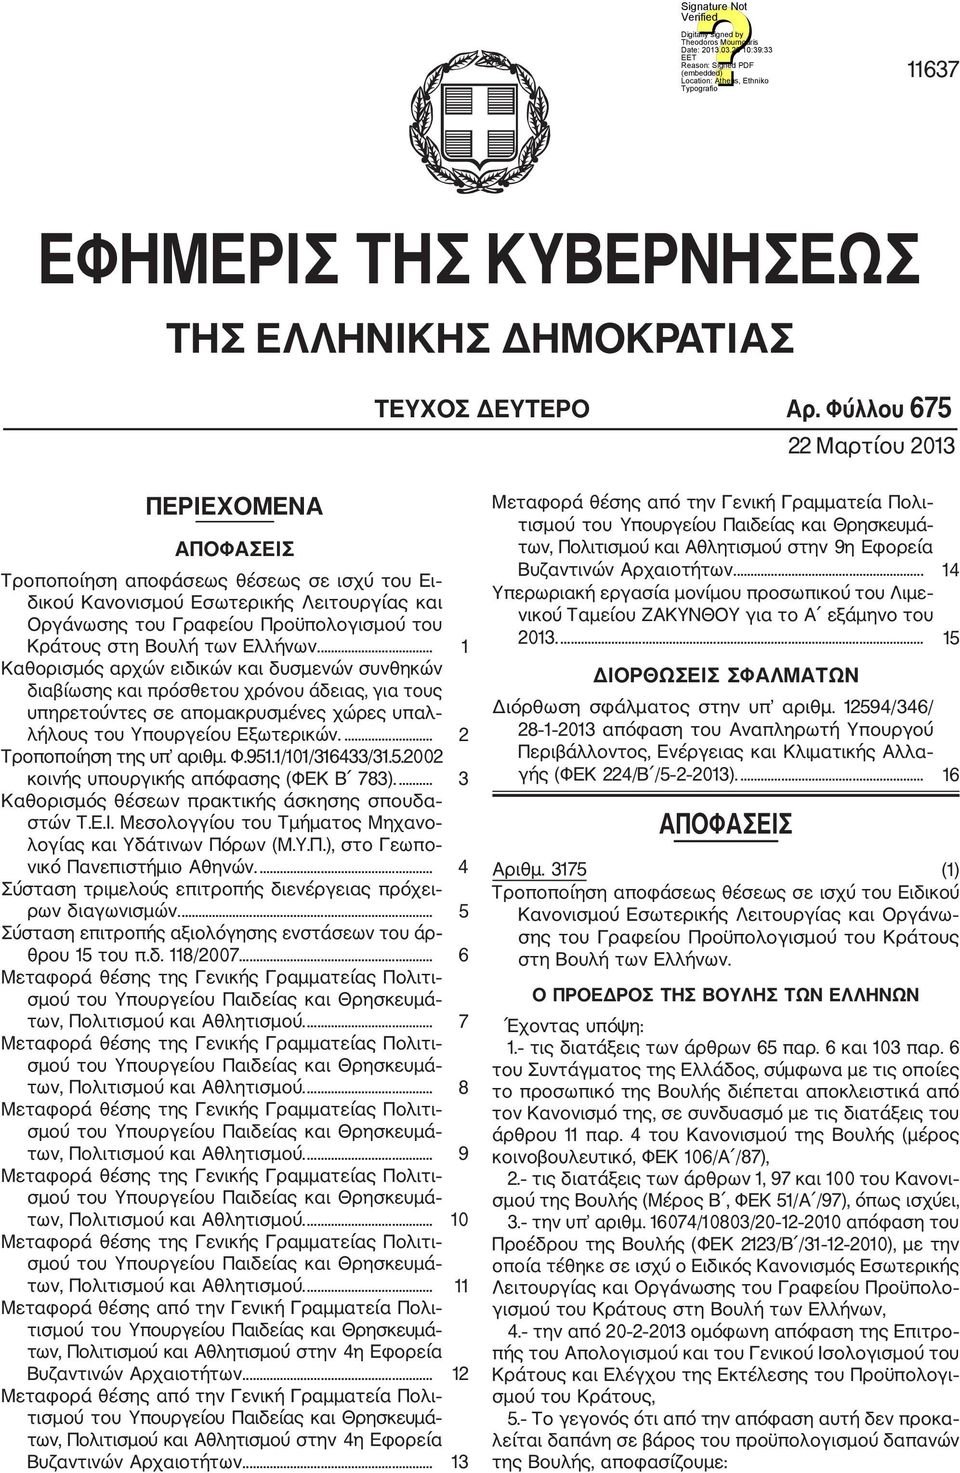 των Ελλήνων.... 1 Καθορισμός αρχών ειδικών και δυσμενών συνθηκών διαβίωσης και πρόσθετου χρόνου άδειας, για τους υπηρετούντες σε απομακρυσμένες χώρες υπαλ λήλους του Υπουργείου Εξωτερικών.